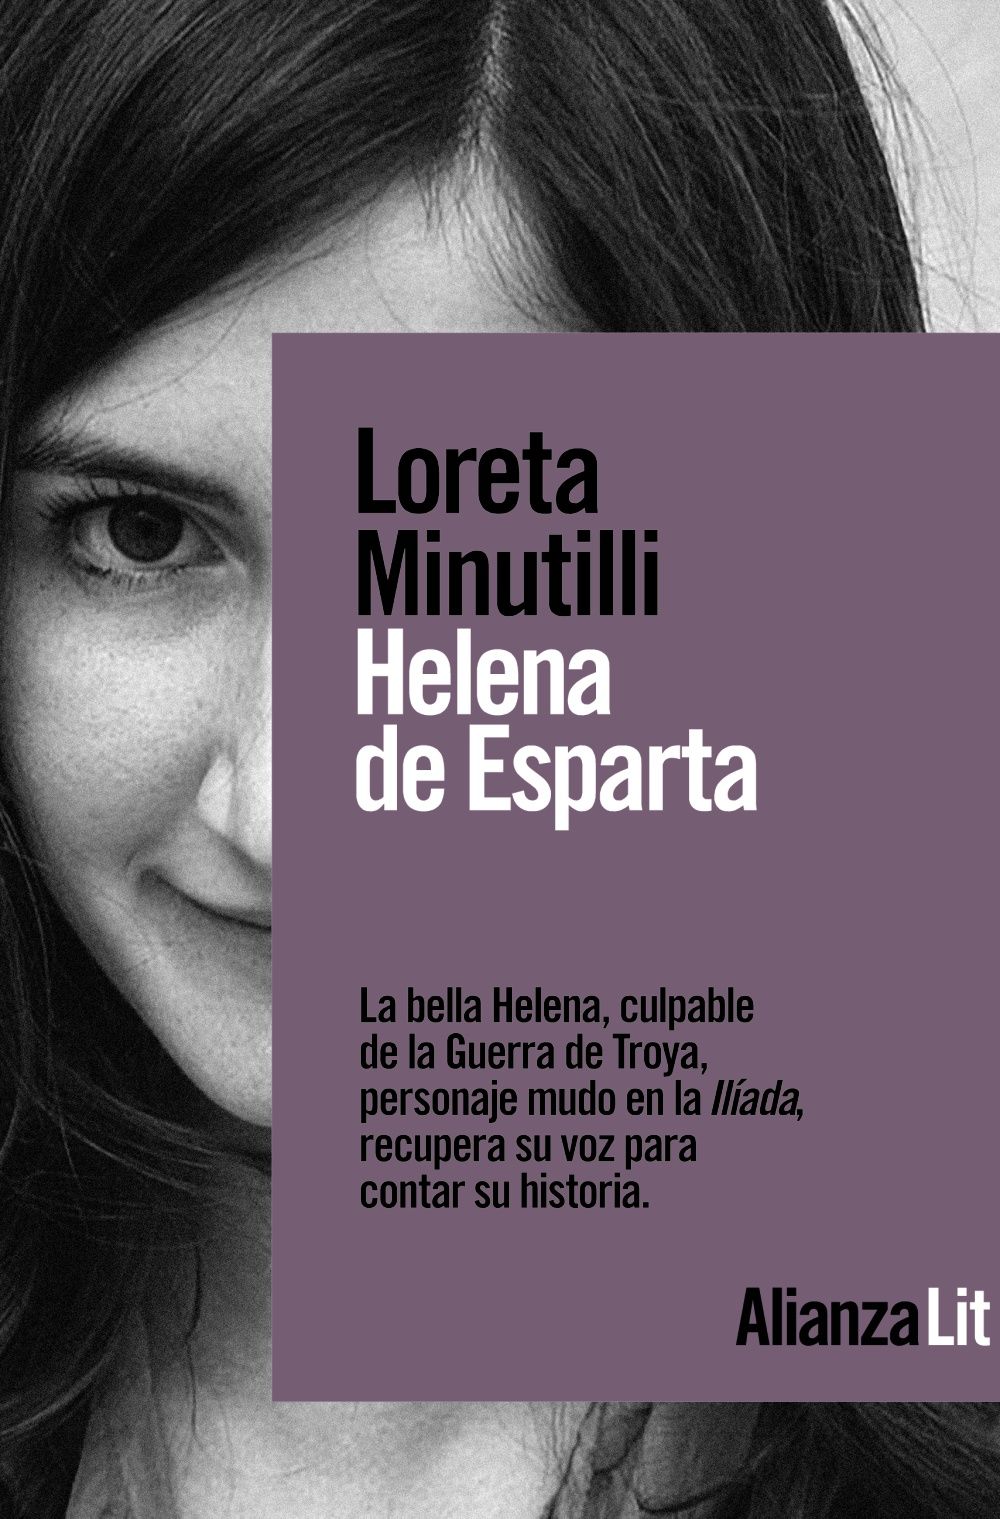 HELENA DE ESPARTA. 